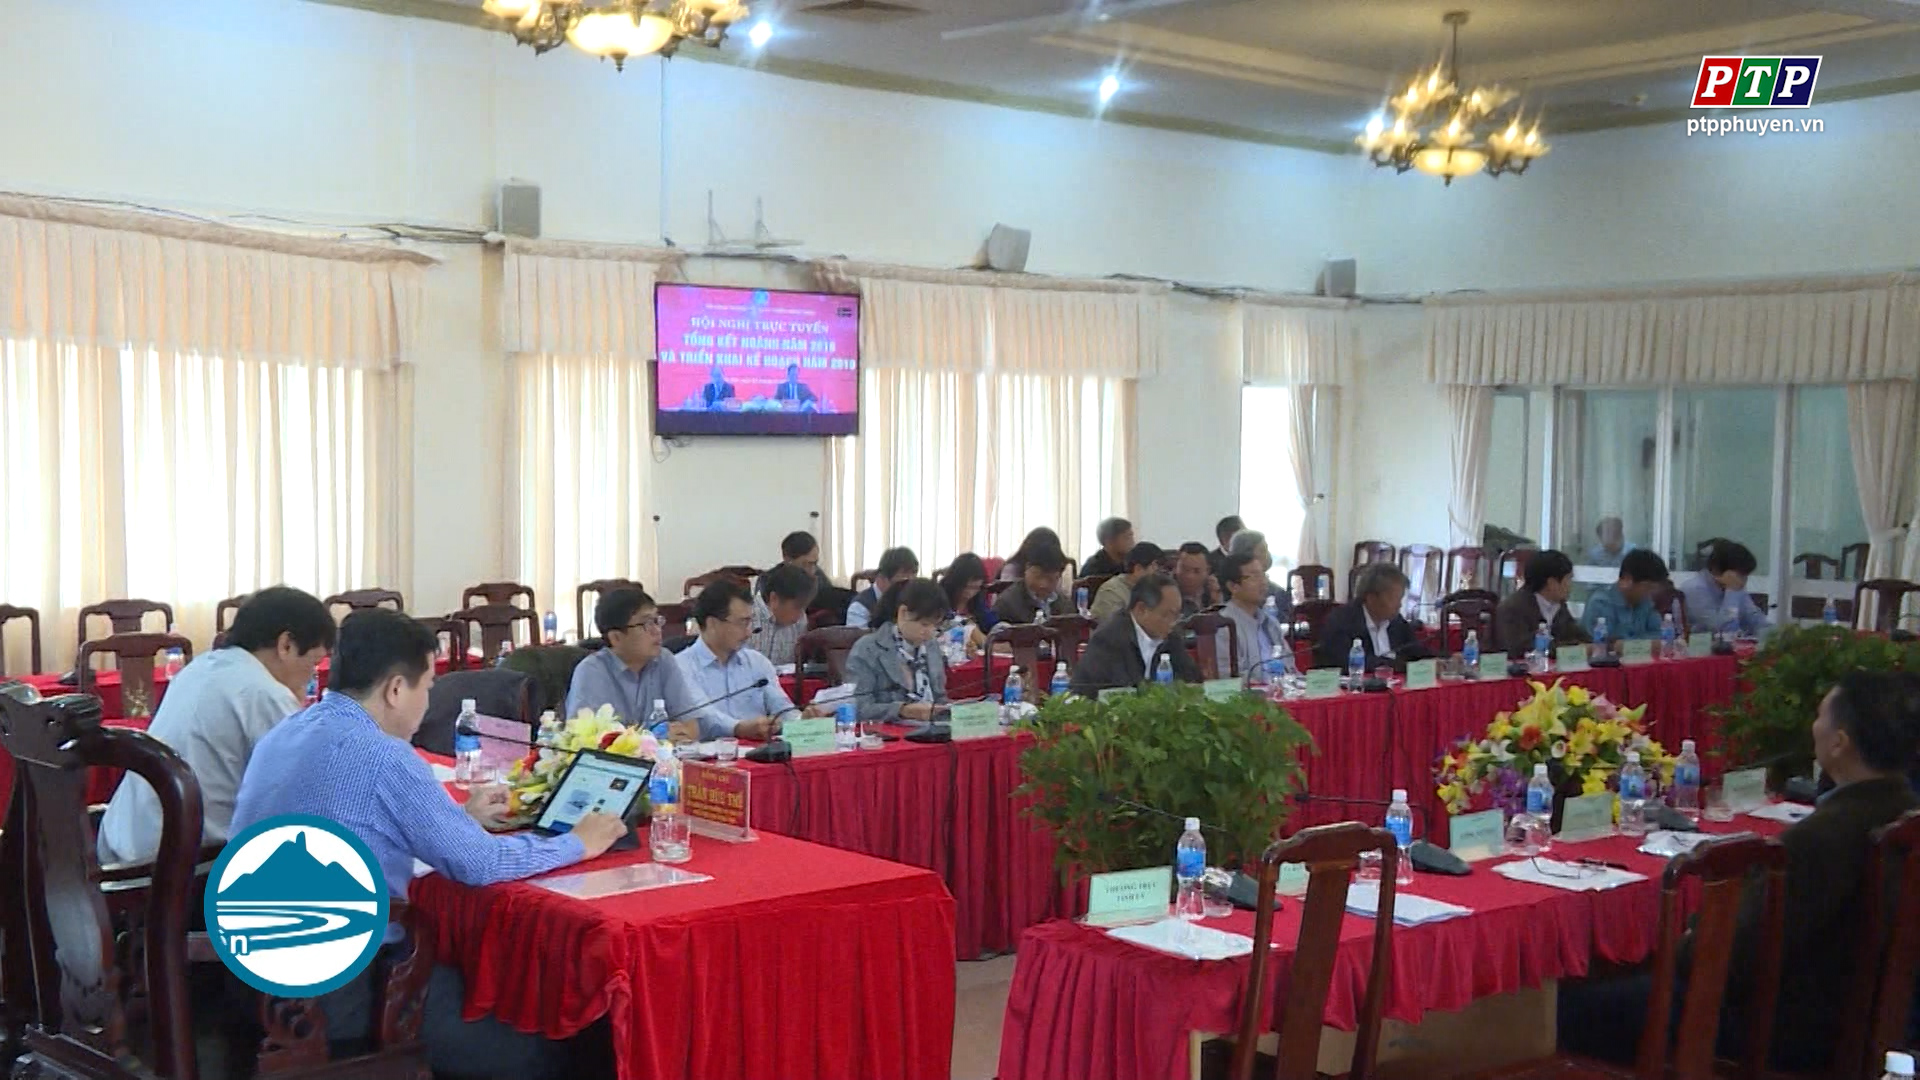 Thủ tướng Nguyễn Xuân Phúc vừa chủ trì Hội nghị trực tuyến toàn quốc tổng kết công tác năm 2018 và triển khai kế hoạch NN và PTNT năm 2019